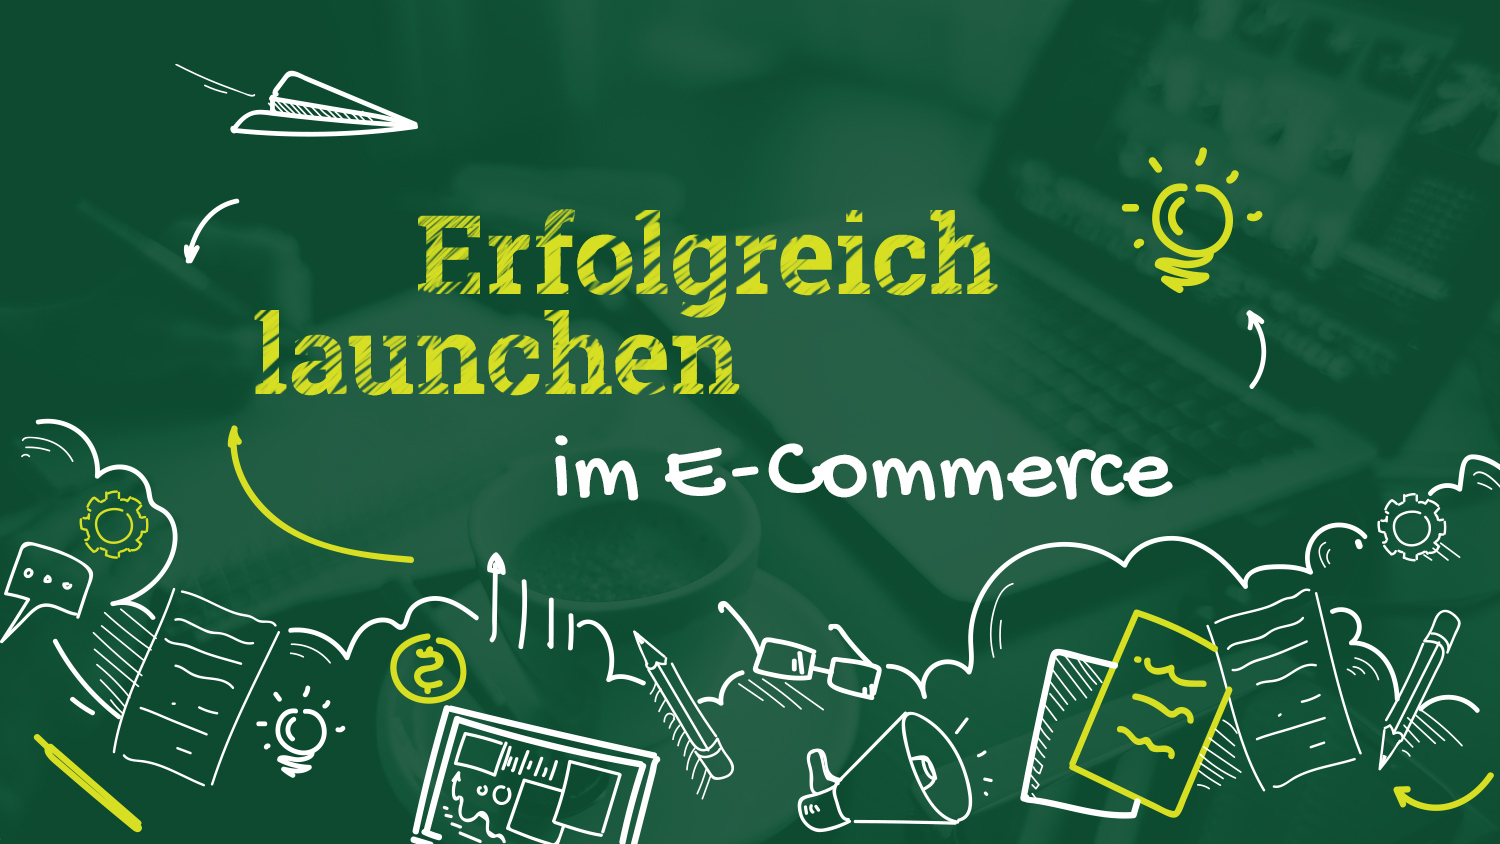 Erfolgreich launchen im E-Commerce – so machst du deinen Online-Shop bekannt